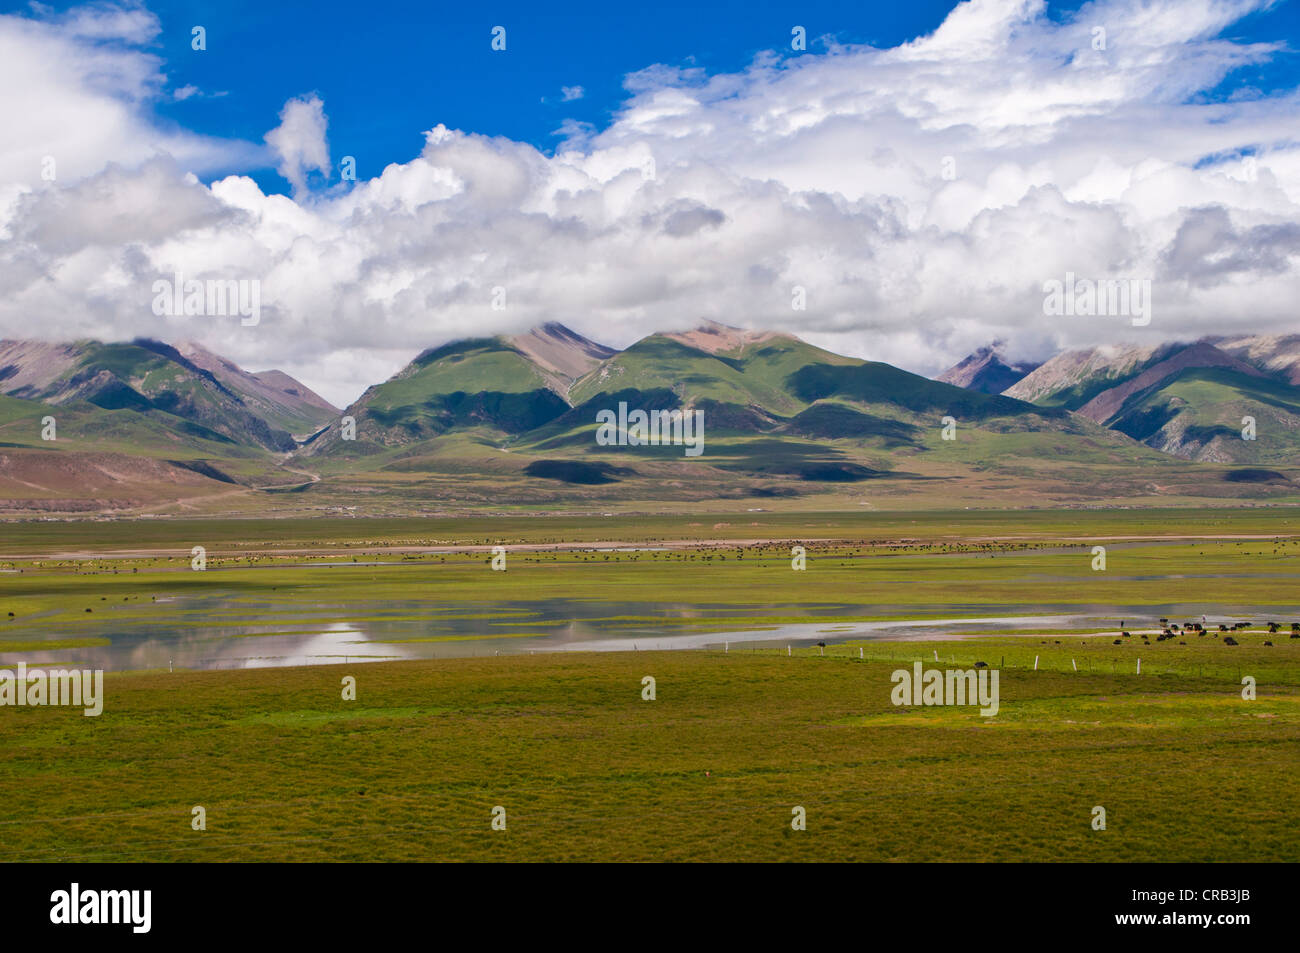 Gran paisaje abierto del Tíbet a lo largo de la línea ferroviaria de Lhasa a Chengdu, Tíbet, Asia Foto de stock